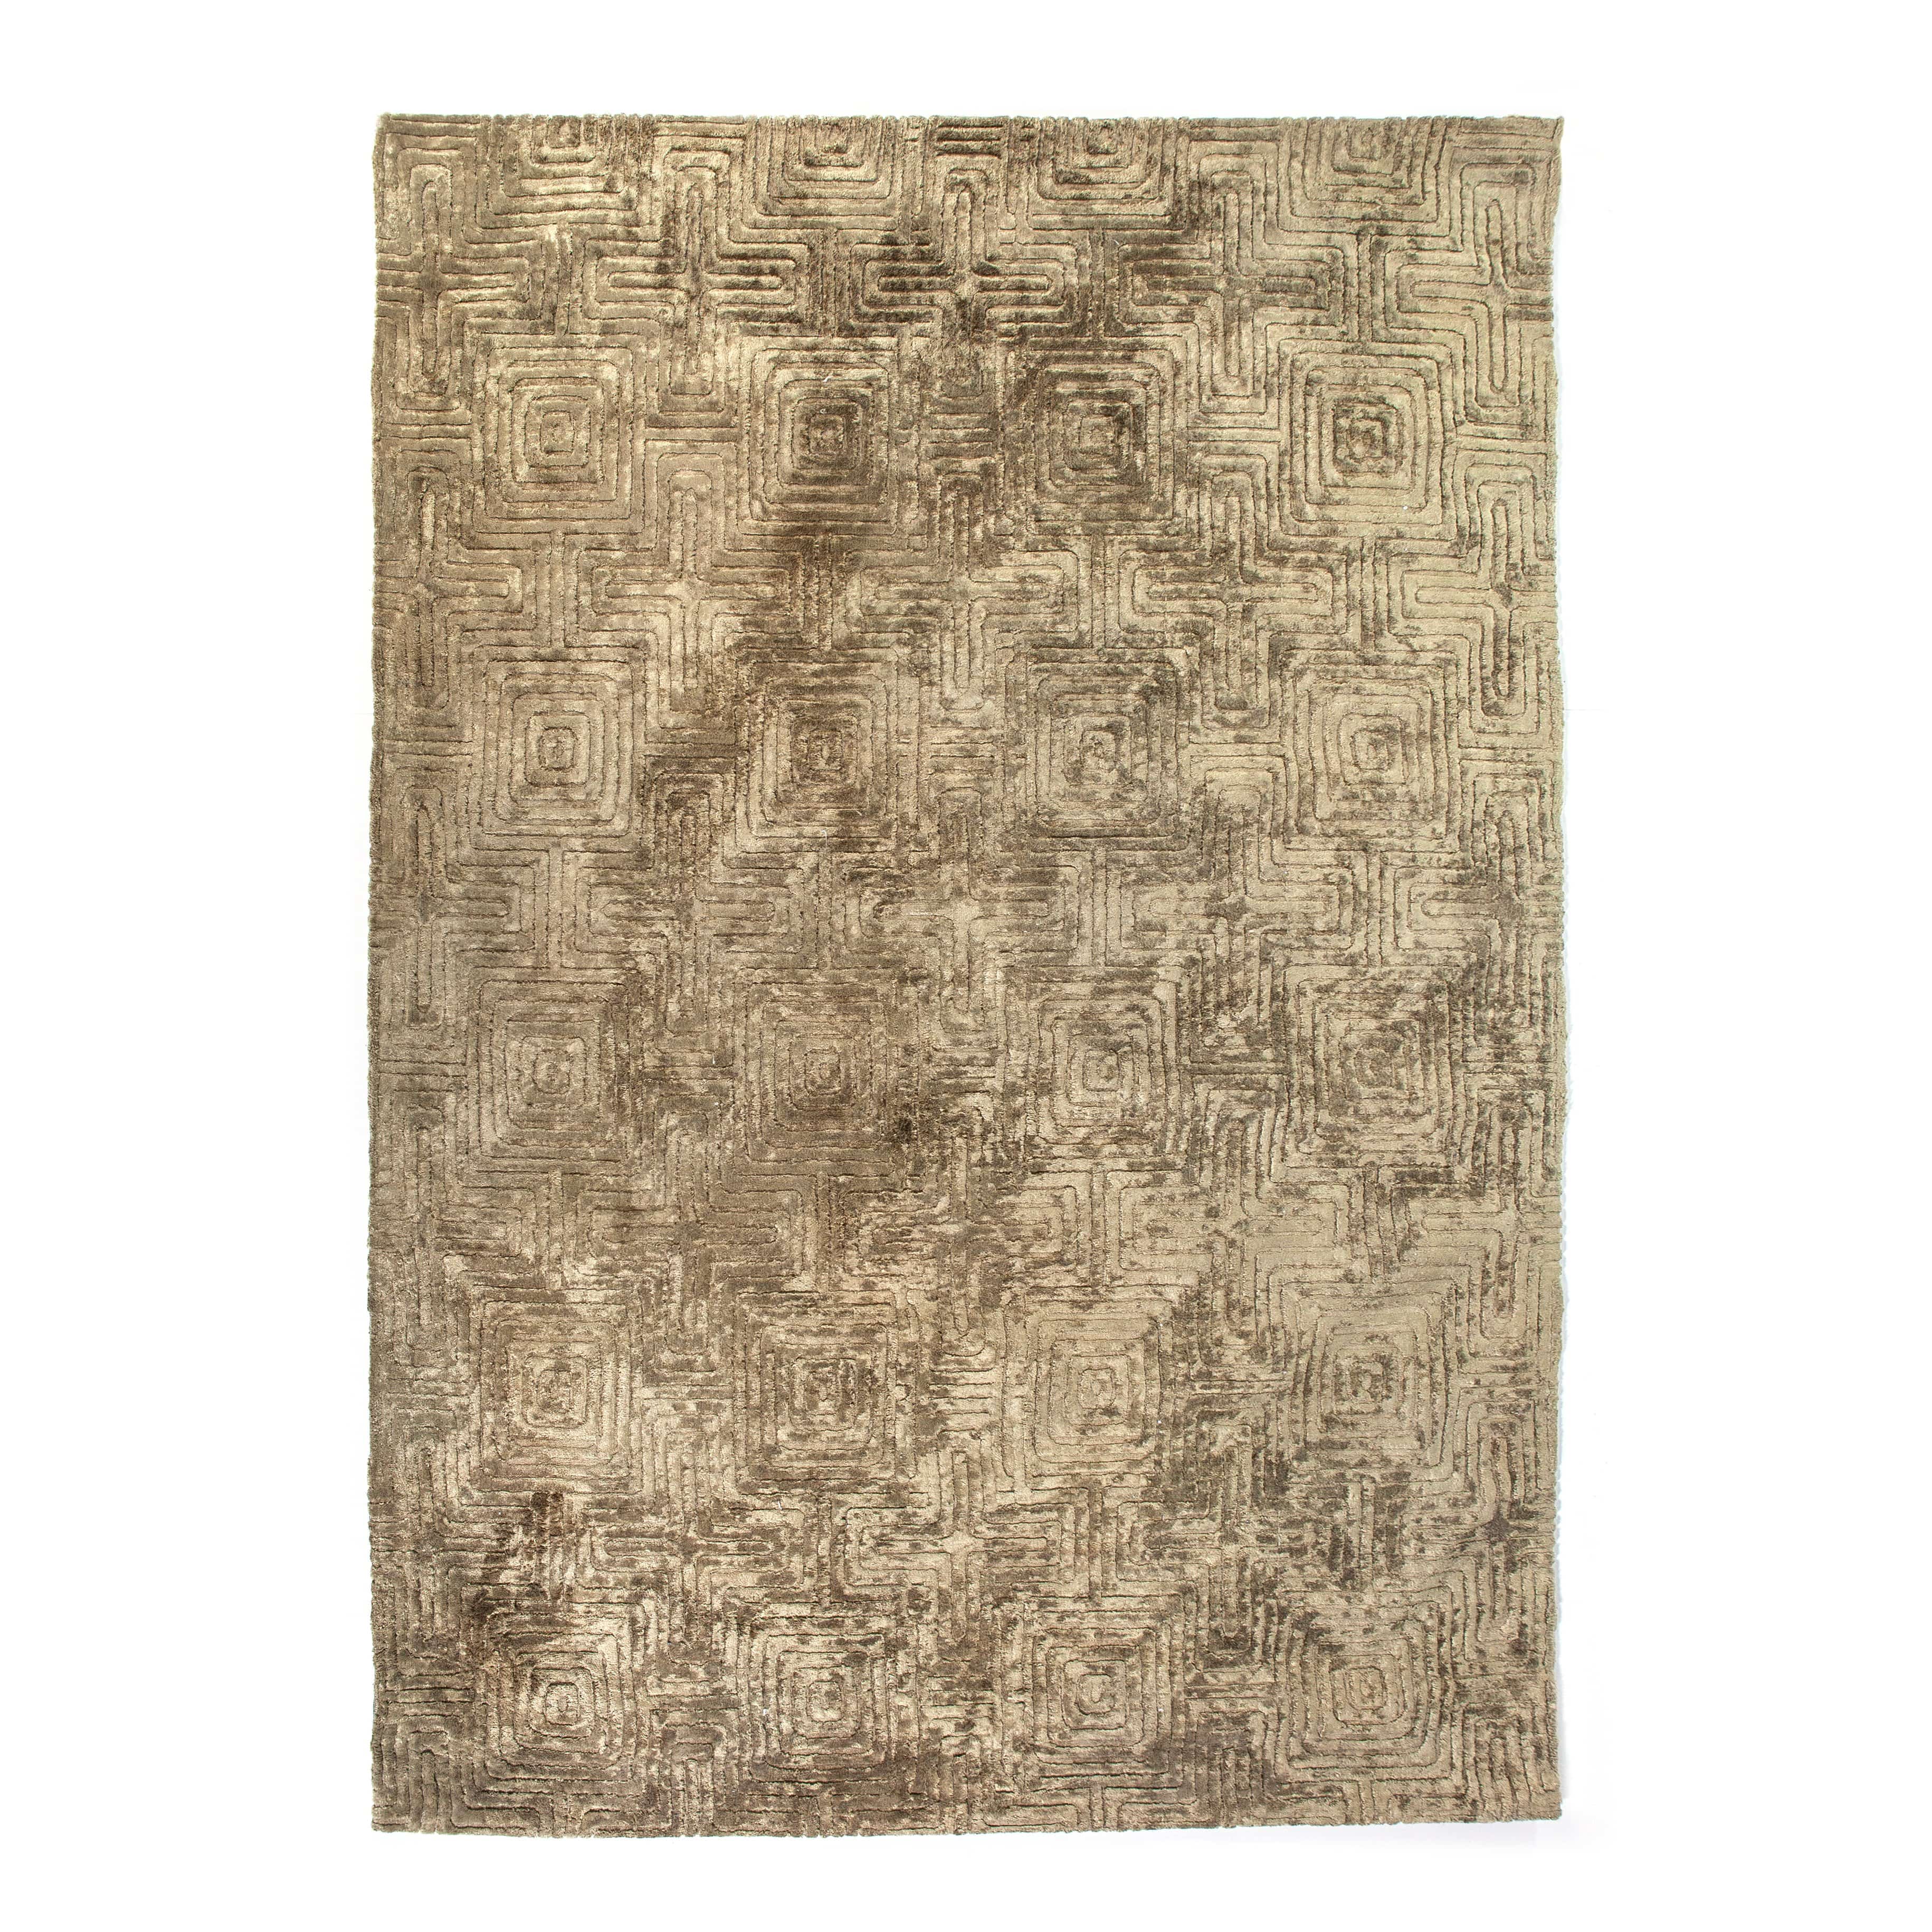 Carpet Madam 160x230 cm -  189,- GRATIS BEZORGEN - online bestellen bij Potz Wonen